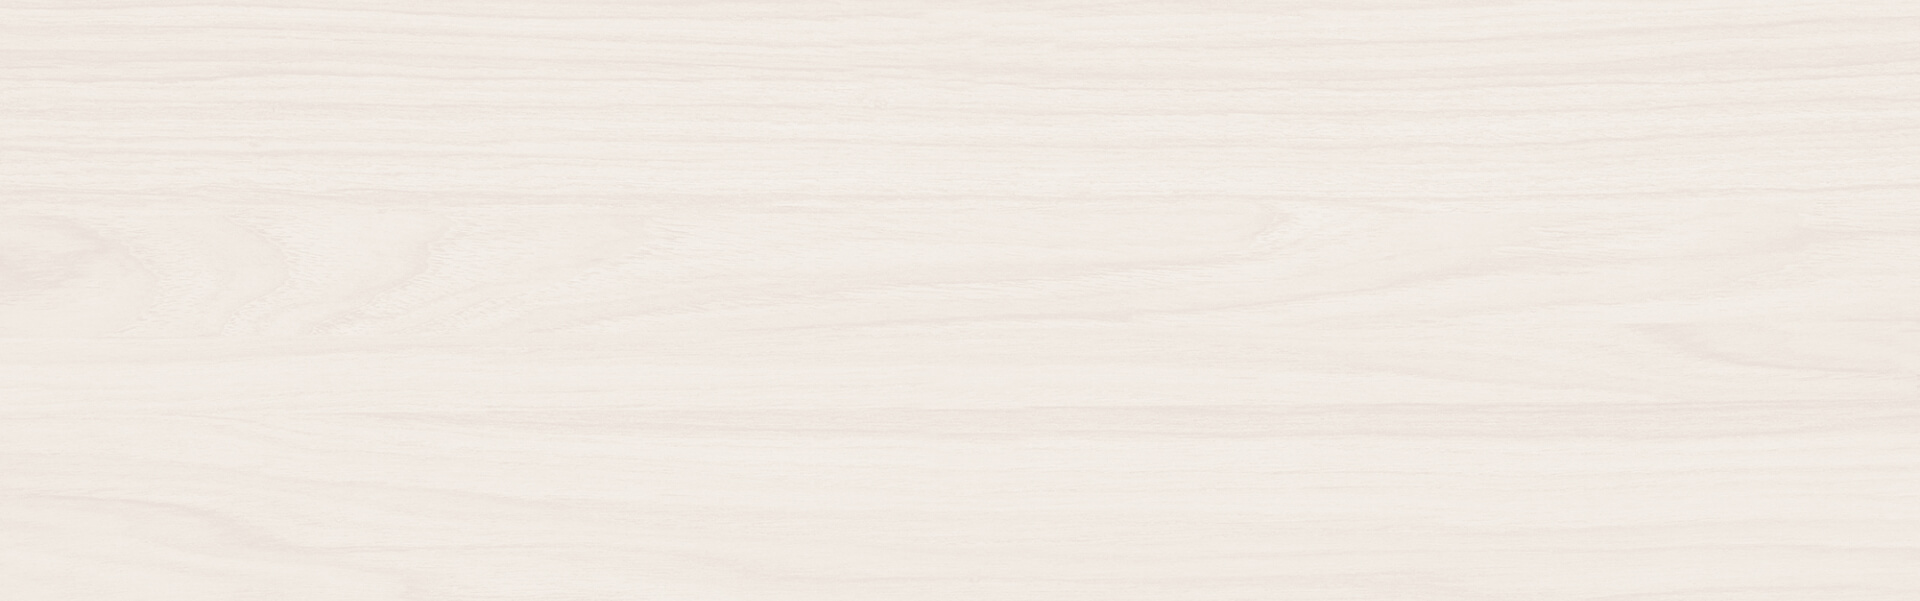 IMG_7867 - Rajnochovice-Bílová paseka